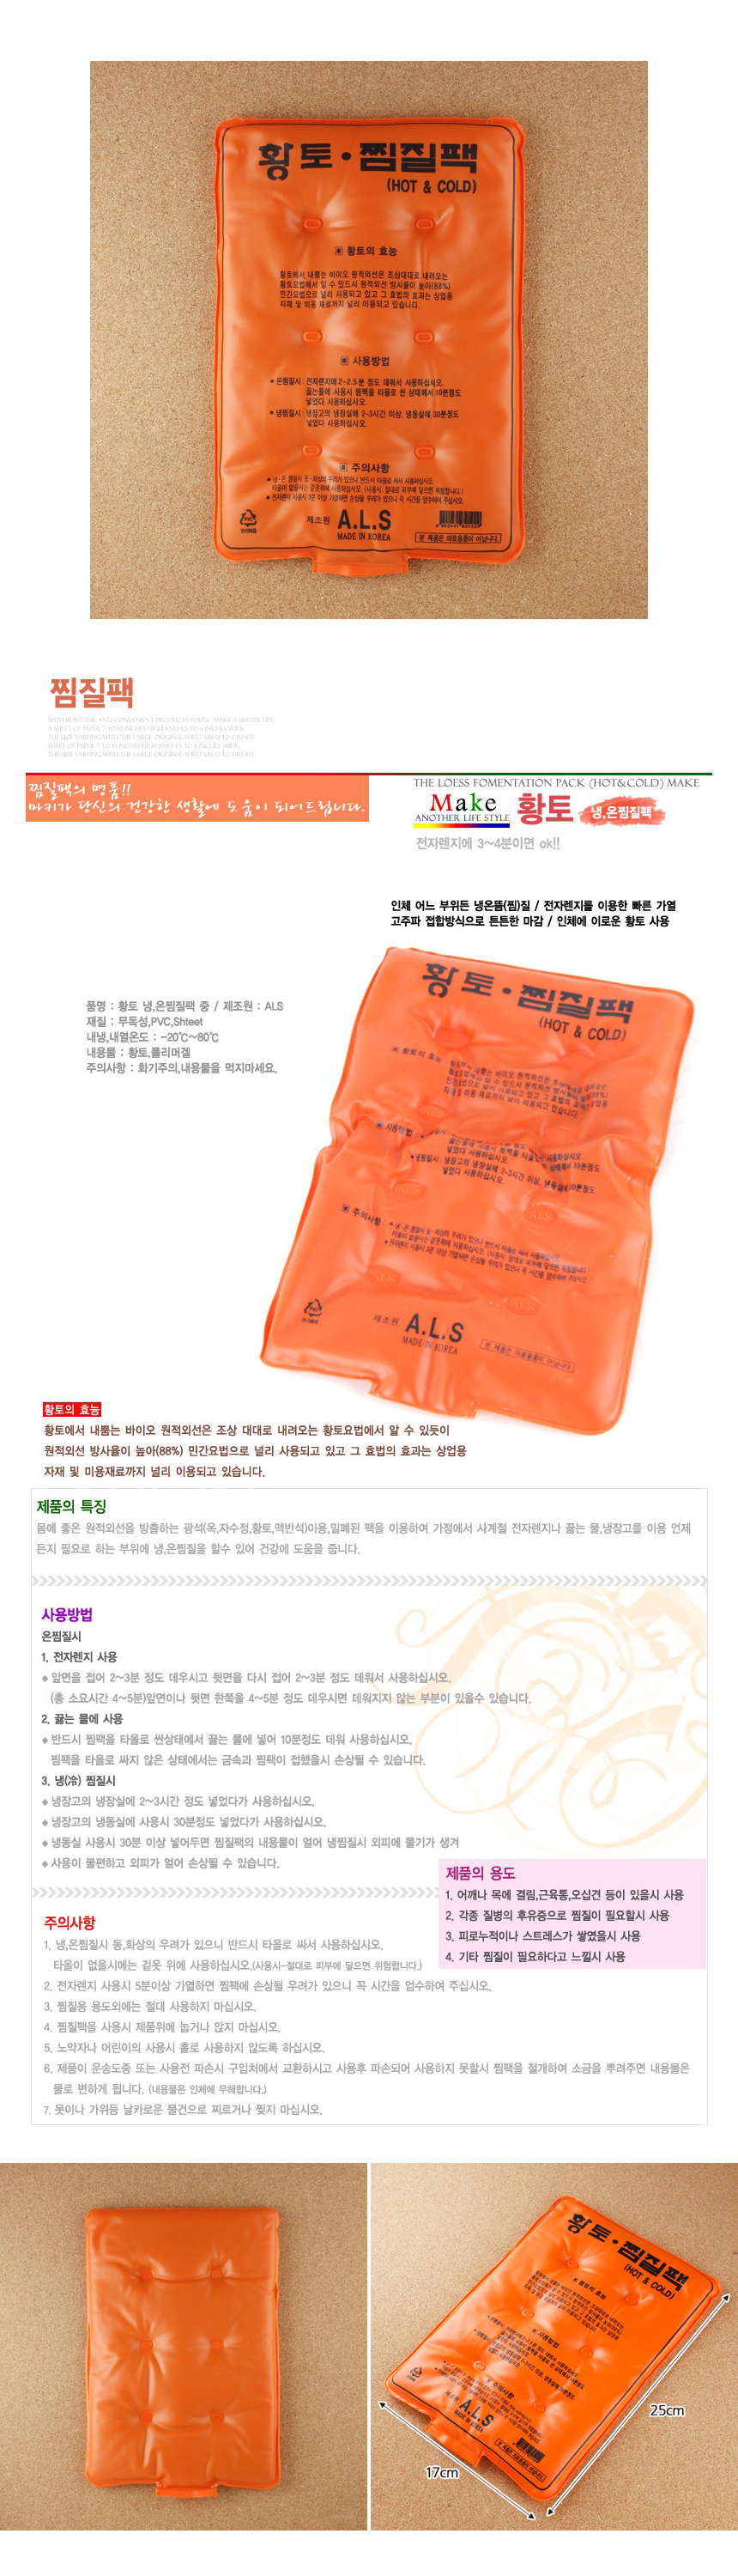 바이오 원적외선 황토냉온찜질팩 /찜질방 홍보용 핫팩